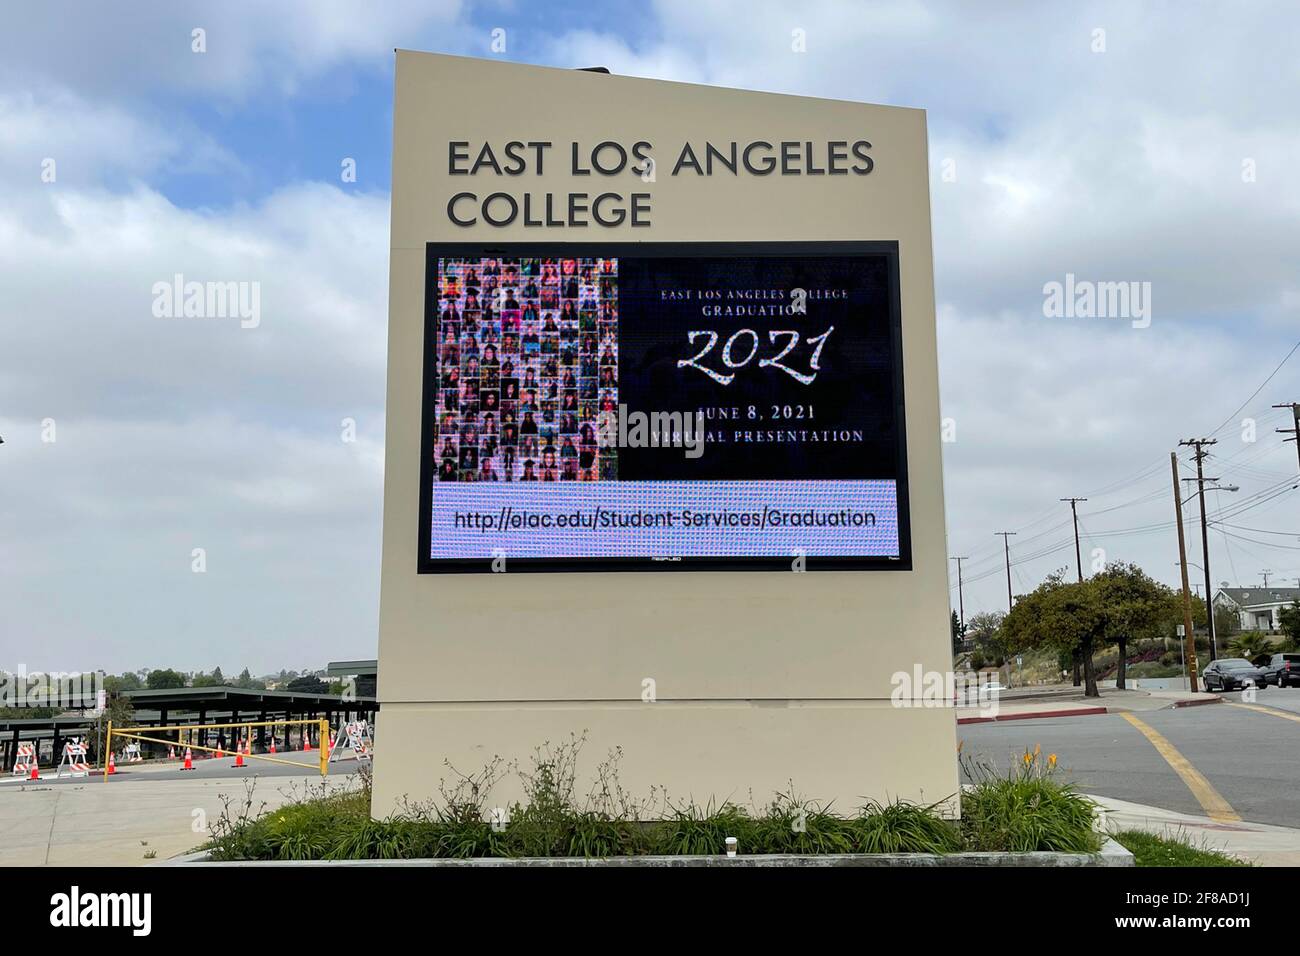 Un message virtuel de remise des diplômes de 2021 sur le panneau du chapiteau à l'East Los Angeles College, le lundi 12 avril 2021, à Monterey Park, Calif. Banque D'Images